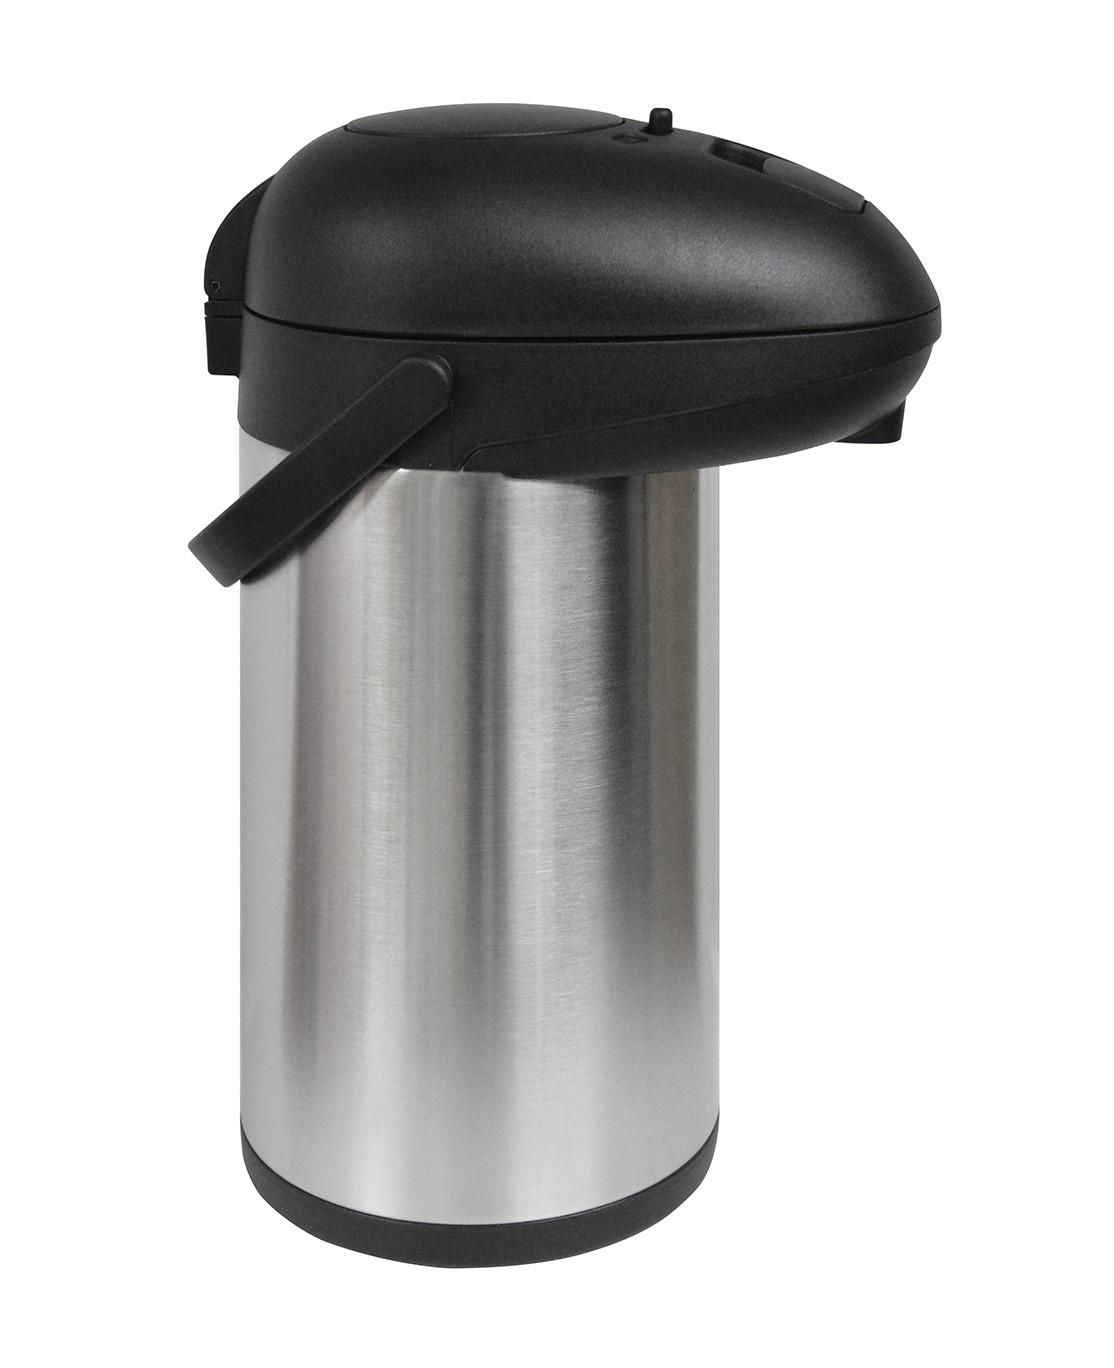 ترمس شاي ( حافظة حرارة ) 4 لتر - فضي Royalford - Double Wall Stainless Steel Airpot Flask